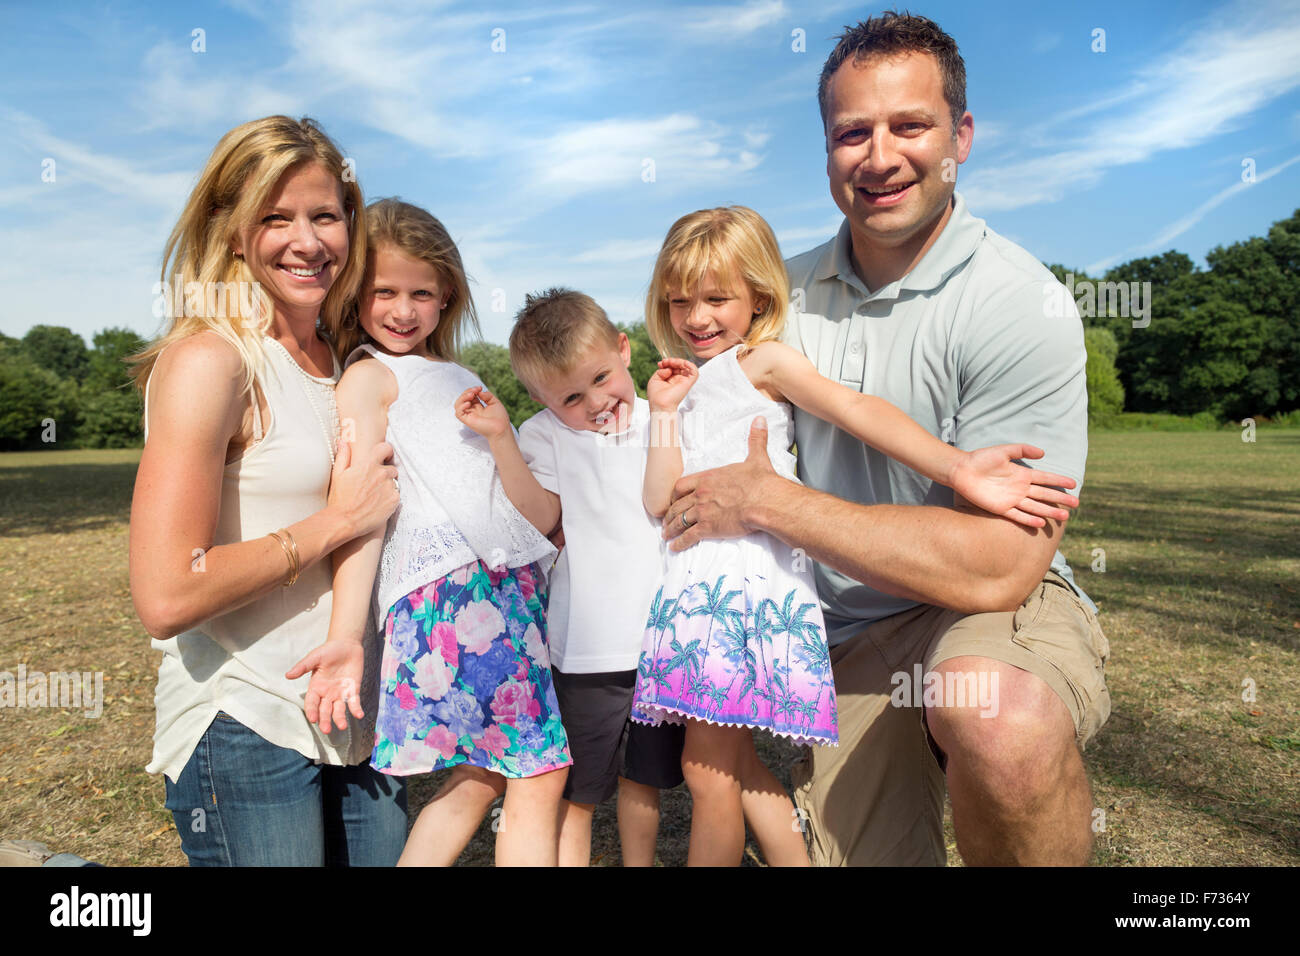 Famille avec trois enfants dans un parc, posant pour une photo. Banque D'Images